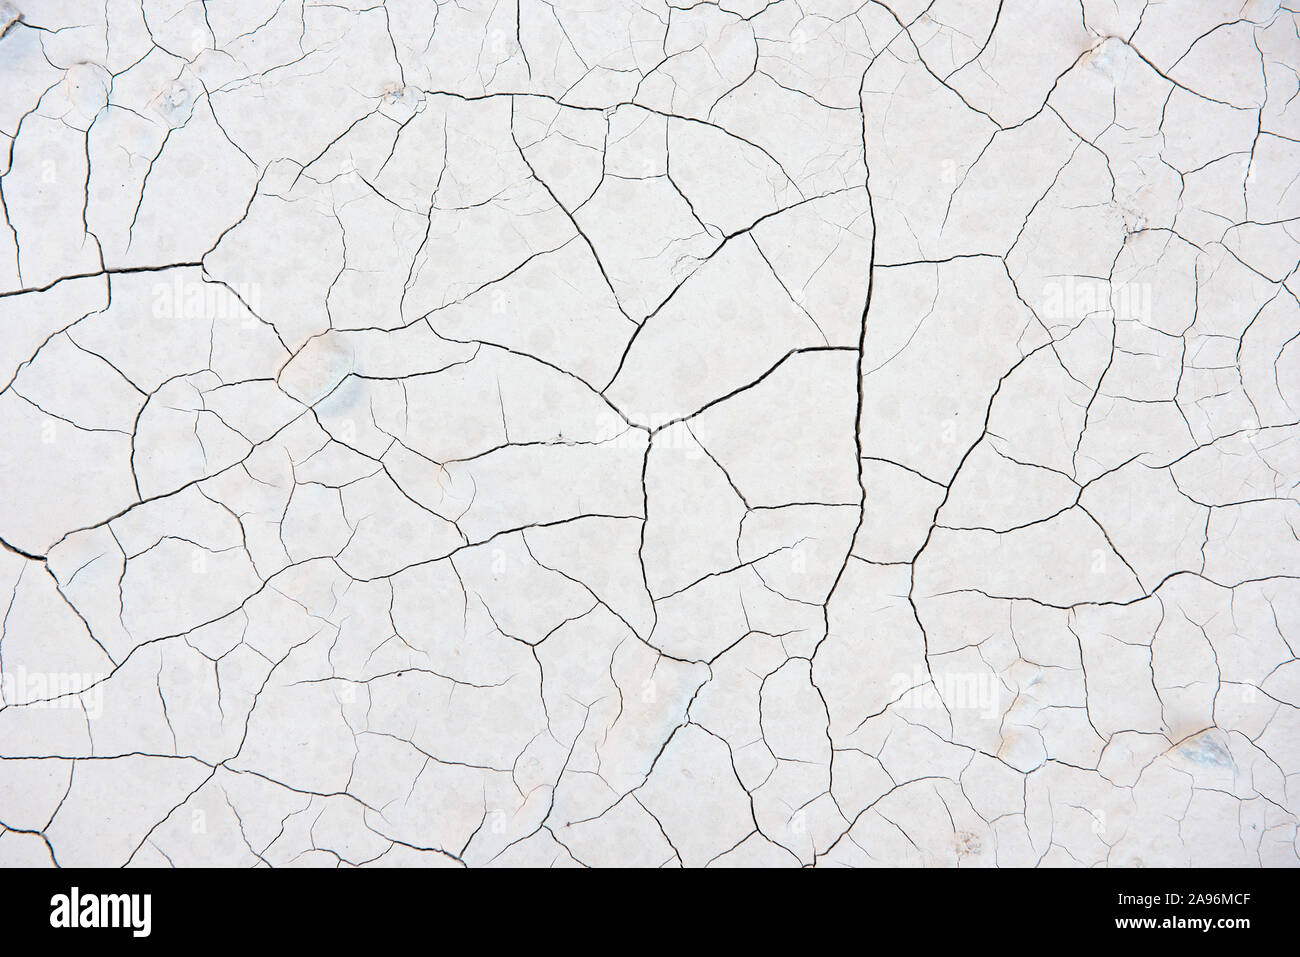 La texture de fond de la poudre de marbre compacté montrant un résumé des remplages des fissures dans une mine de Carrare en Italie Banque D'Images